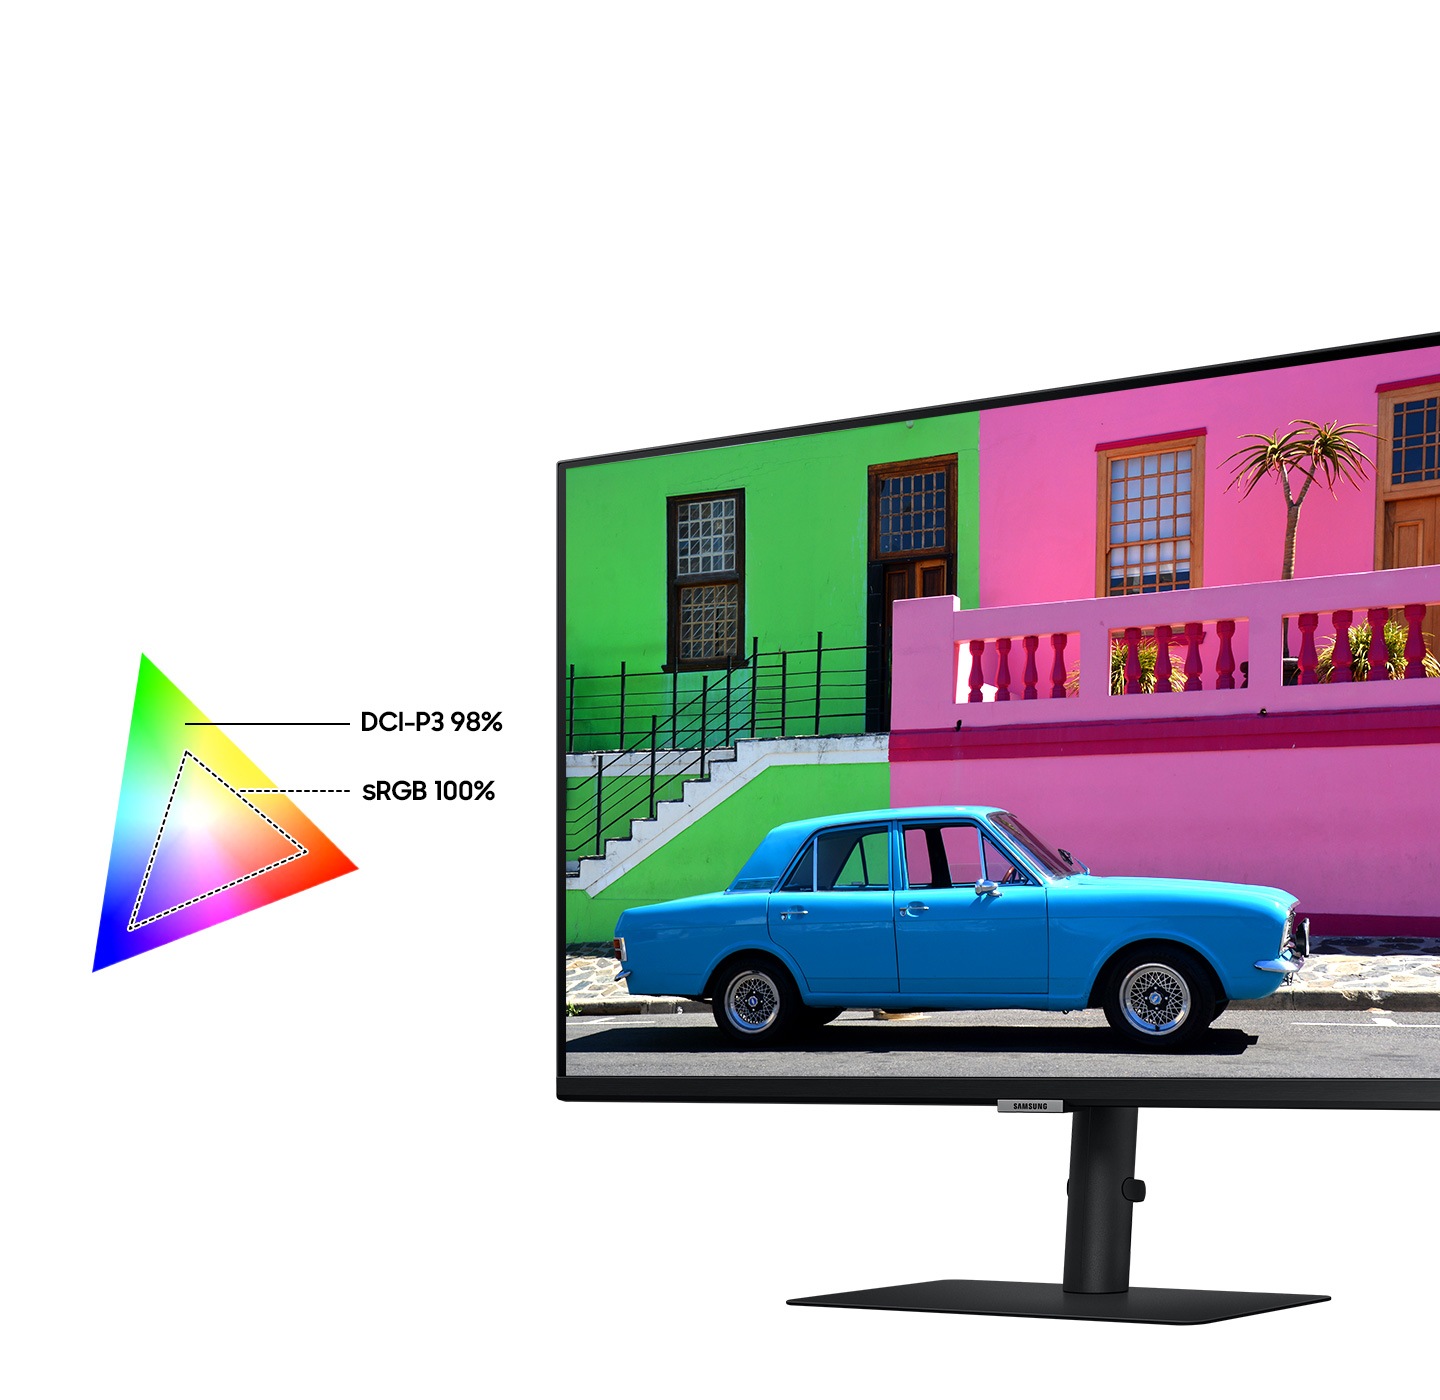 Màn hình và chân đế của nó được hiển thị nghiêng về bên trái. Trên màn hình là một chiếc ô tô đang lái dọc theo một con phố từ trái sang phải với bối cảnh là những ngôi nhà. Biểu đồ màu ở mặt bên của màn hình cho thấy dải màu rộng hơn với DCI-P3 98% so với dải sRGB 100%.